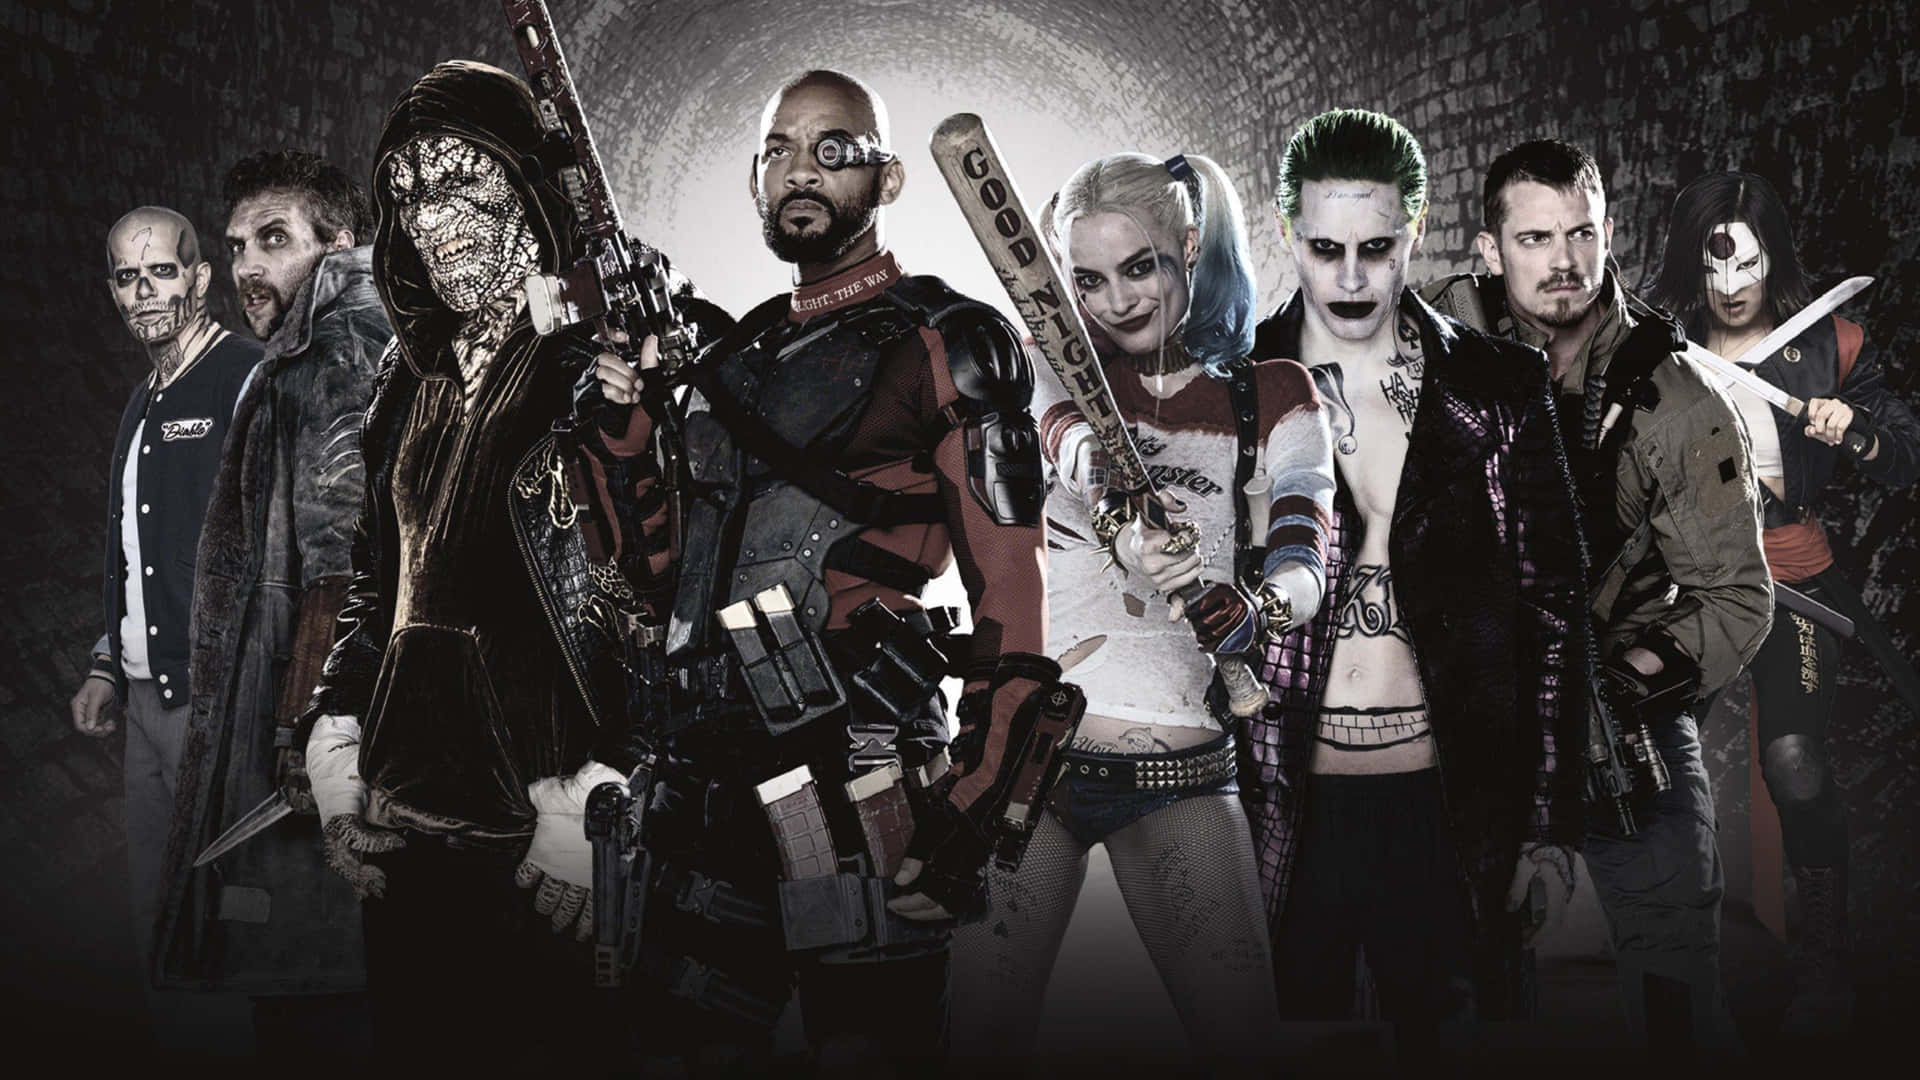 L'amorevince - Joker E Harley Quinn, Suicide Squad Sfondo